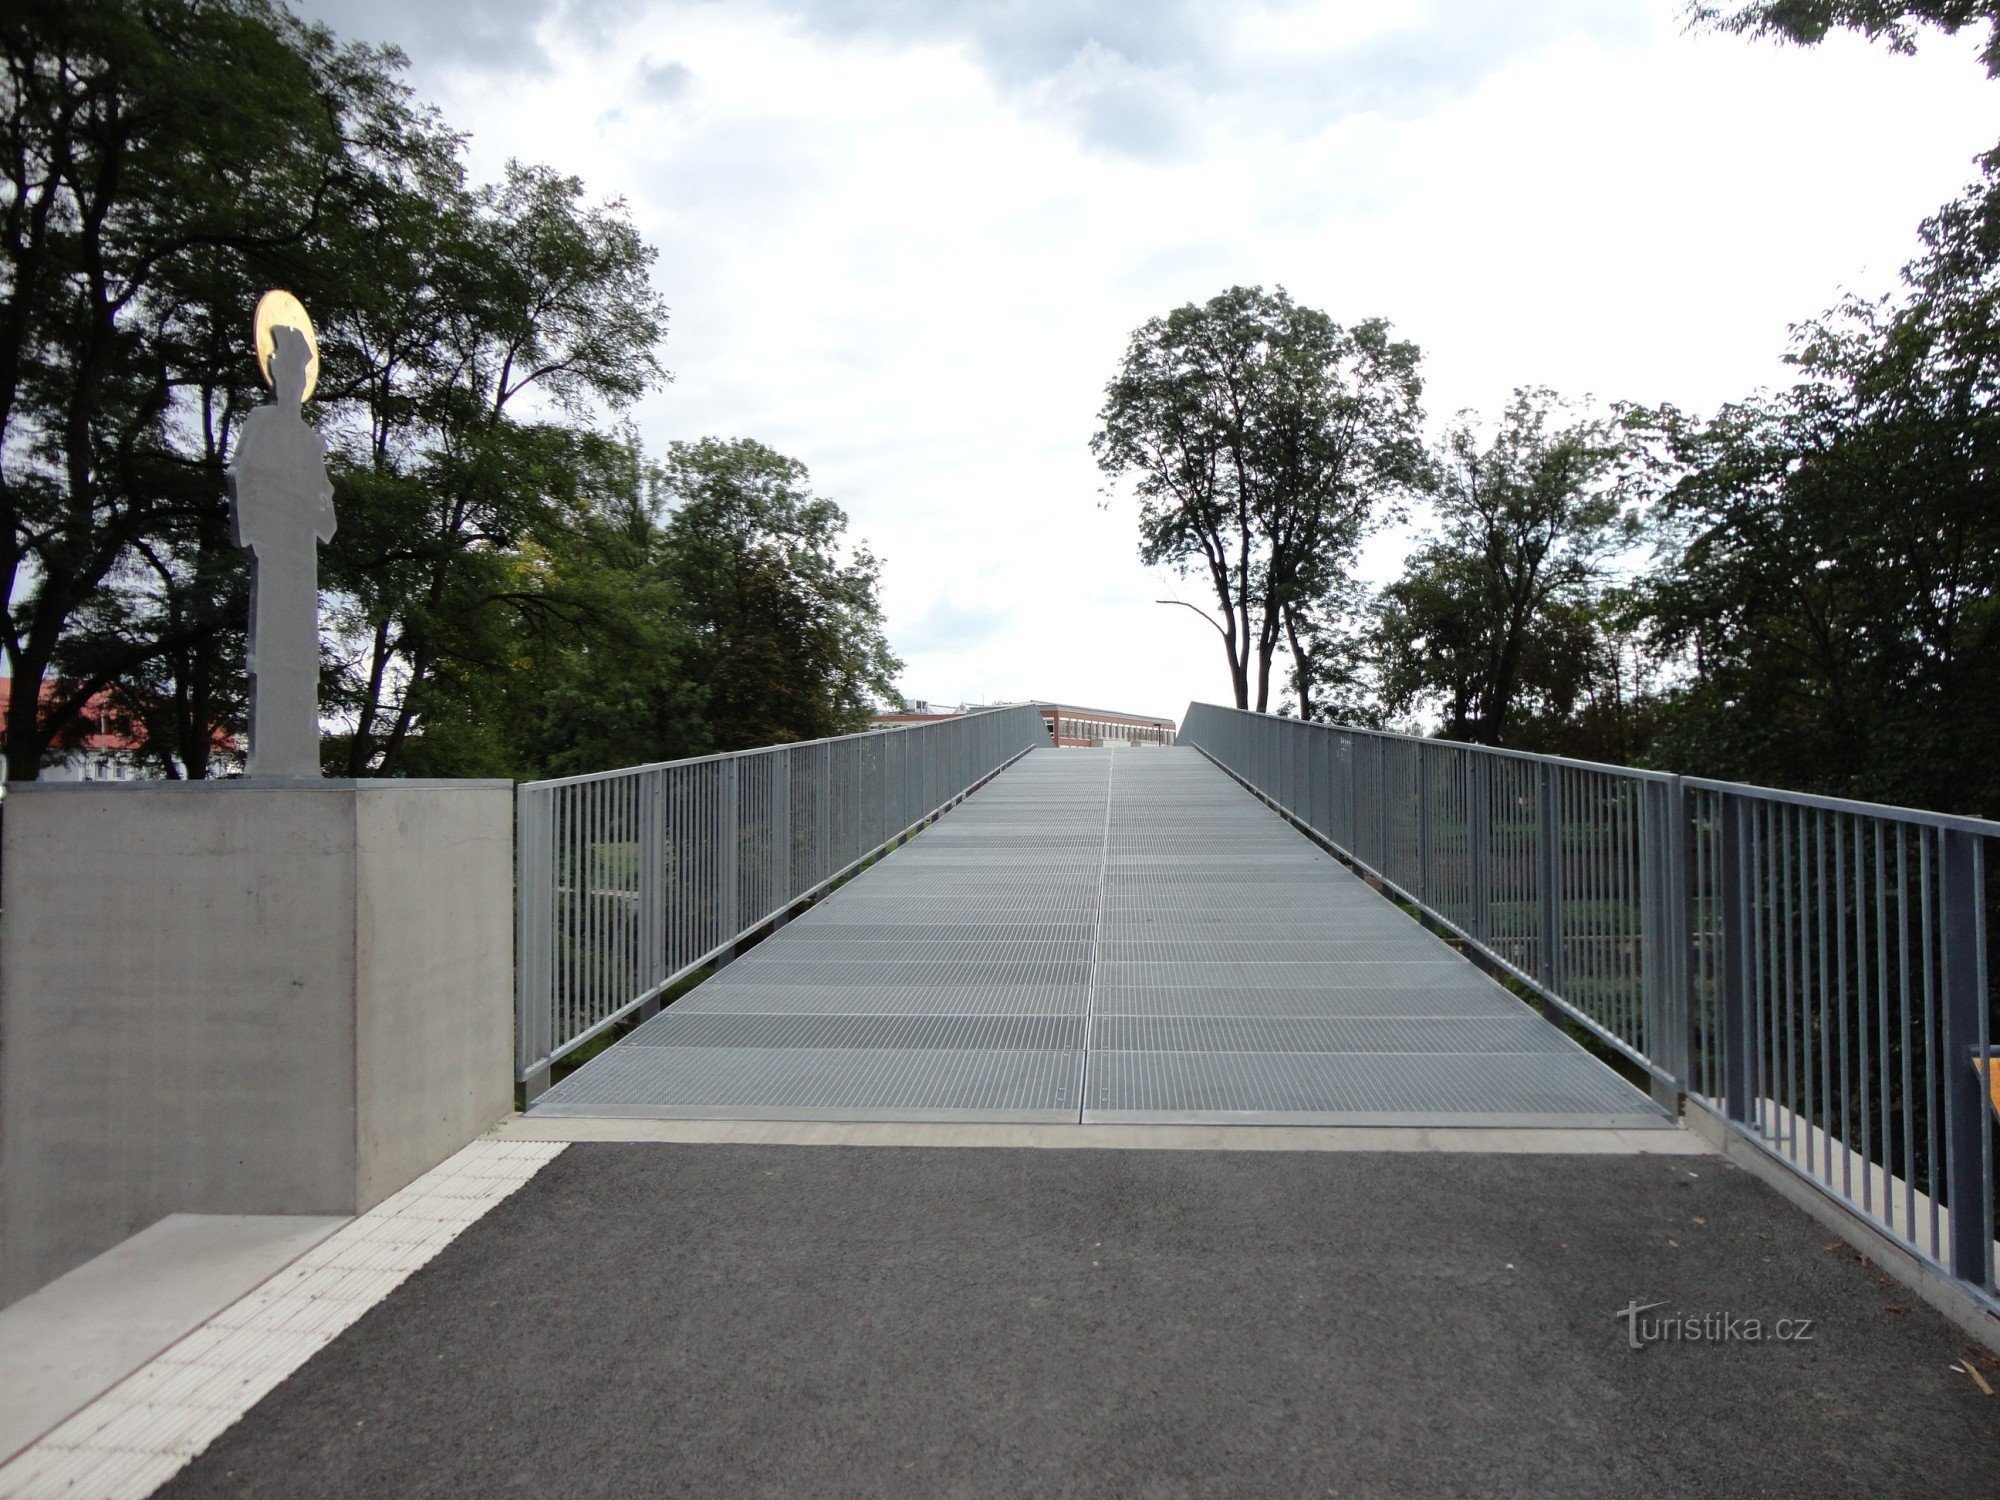 Градец Кралове - пешеходный и велосипедный мост через Орлицу